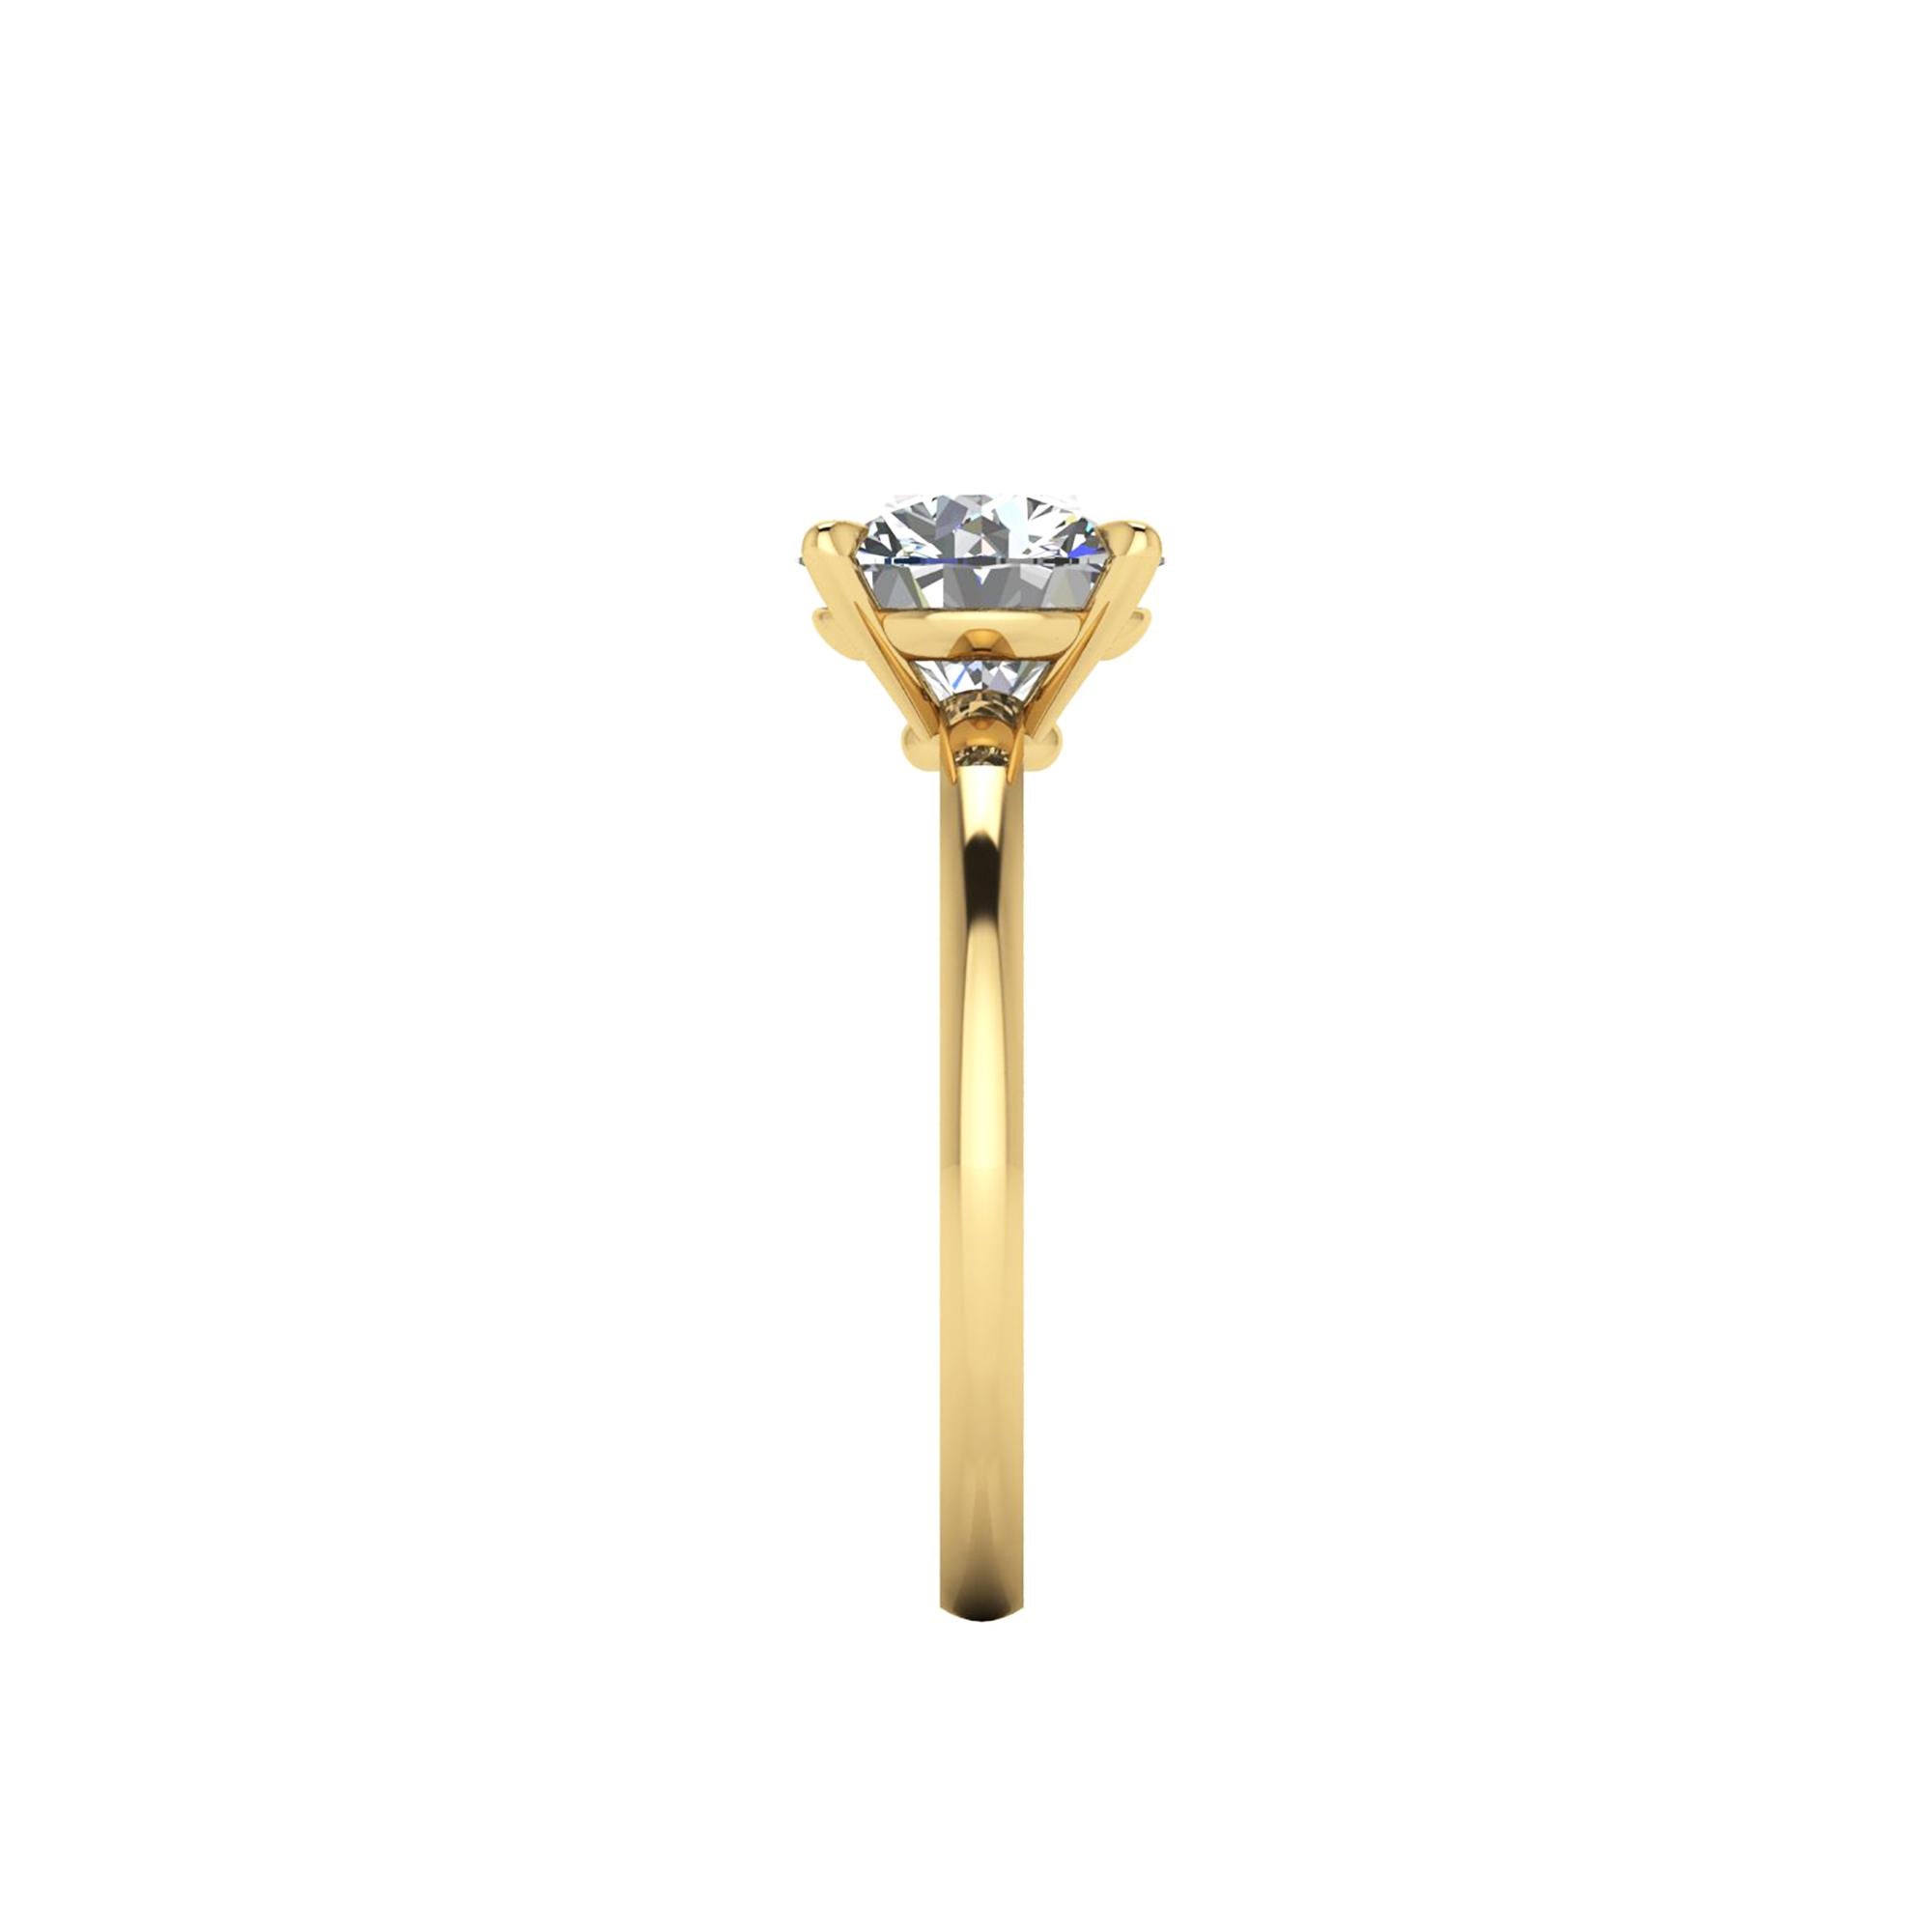 GIA-zertifizierter runder weißer Diamant von 2,01 Karat, Farbe G, Reinheit VS2, dreifach ausgezeichnet in Schliff, Symmetrie und Politur, eingefasst in einen handgefertigten Solitär-Verlobungsring aus 18 Karat Gelbgold, hergestellt in New York City,